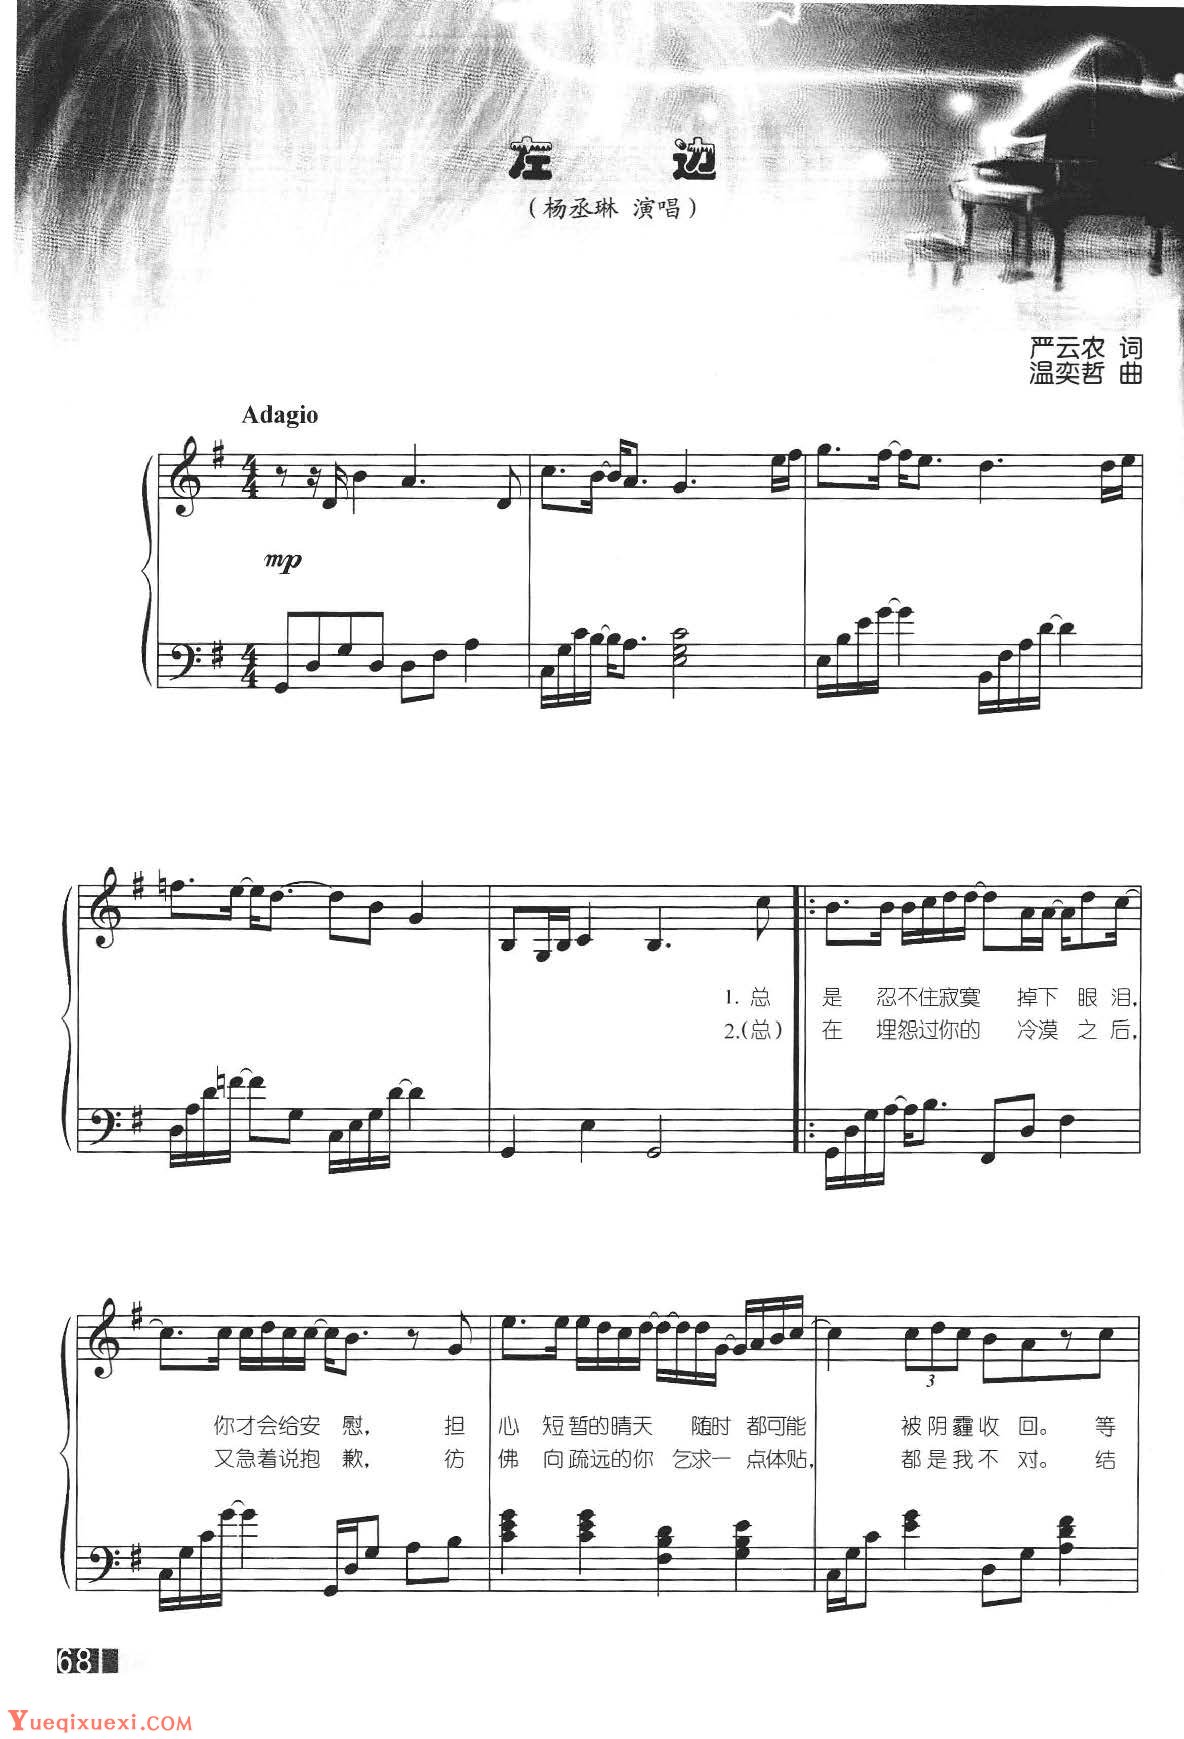 赵志军钢琴弹奏流行歌曲《左边&杨丞琳》简易版